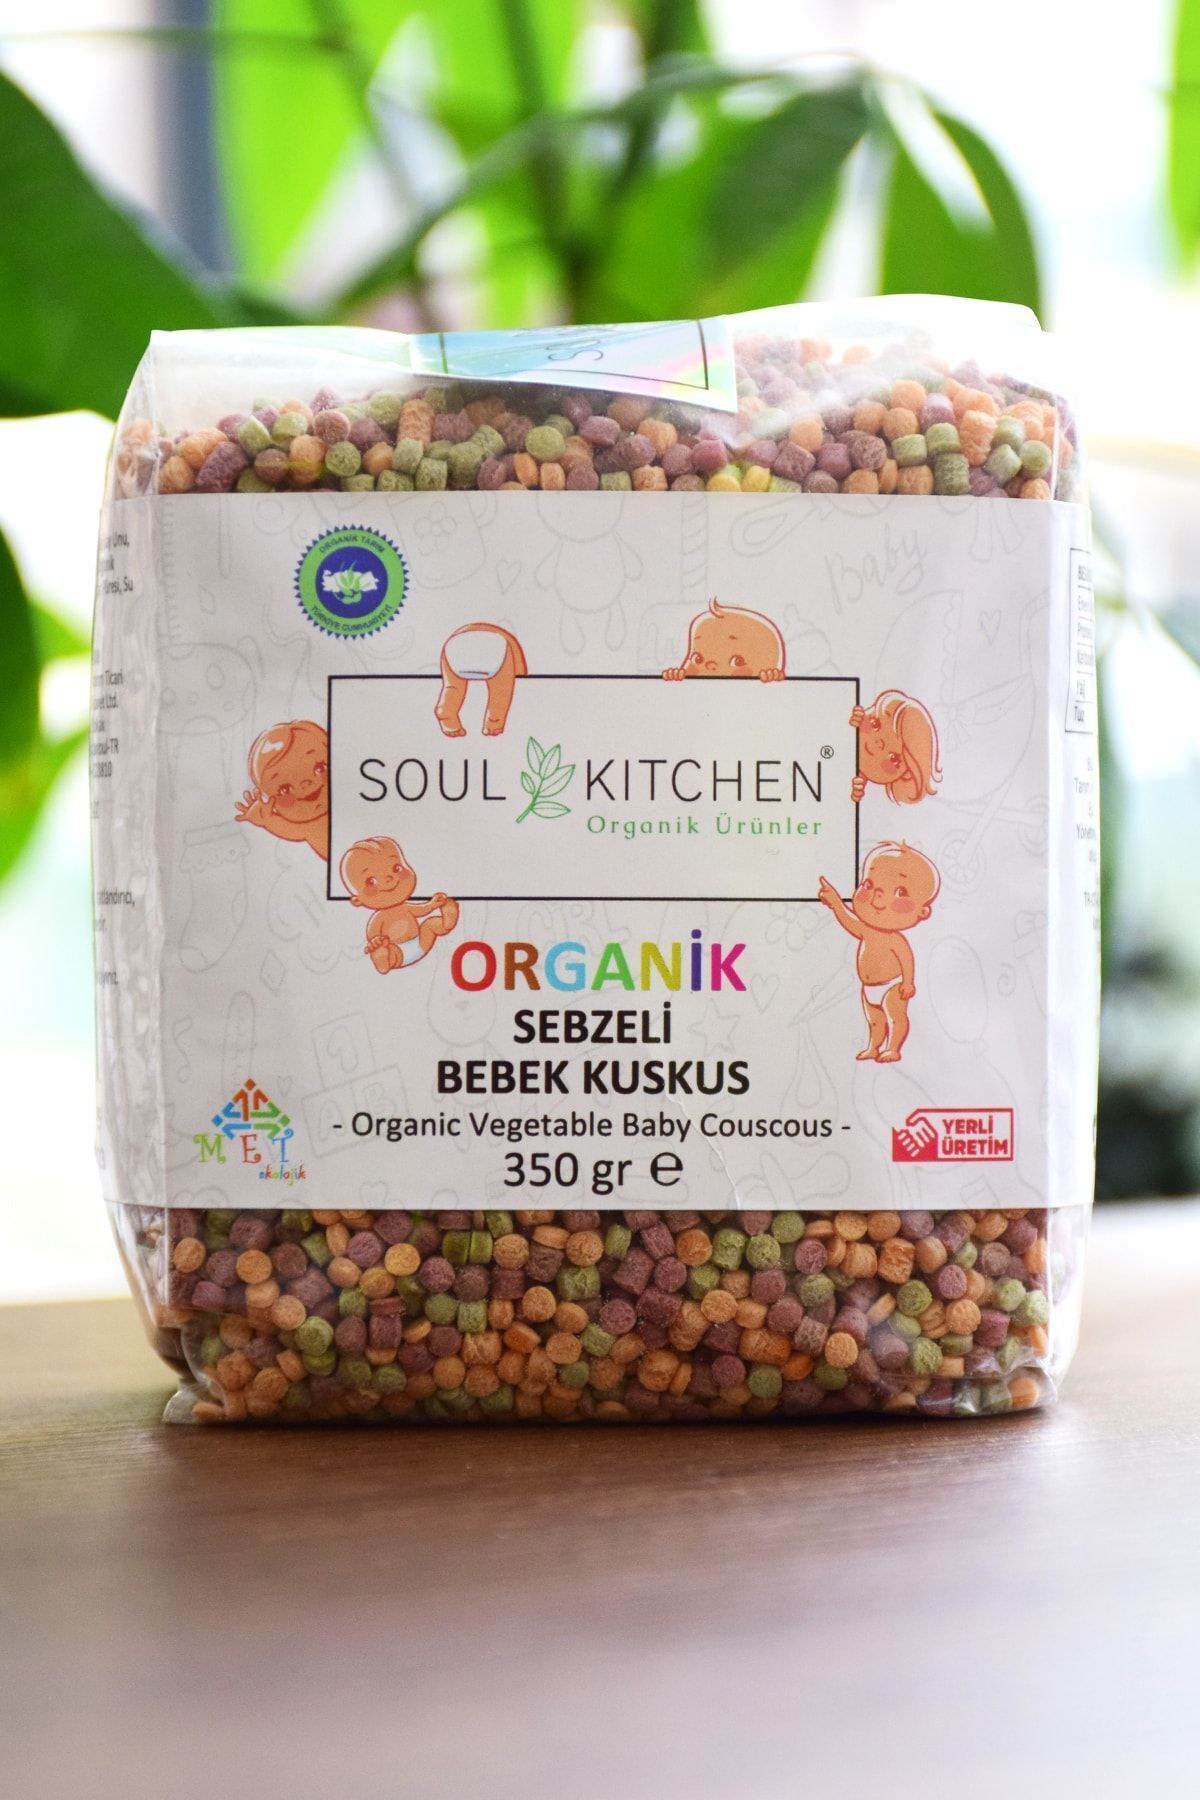 Soul Kitchen Organik Ürünler Sertifikalı Organik Bebek Sebzeli Kuskus 7ay 350gr - Tuzsuz